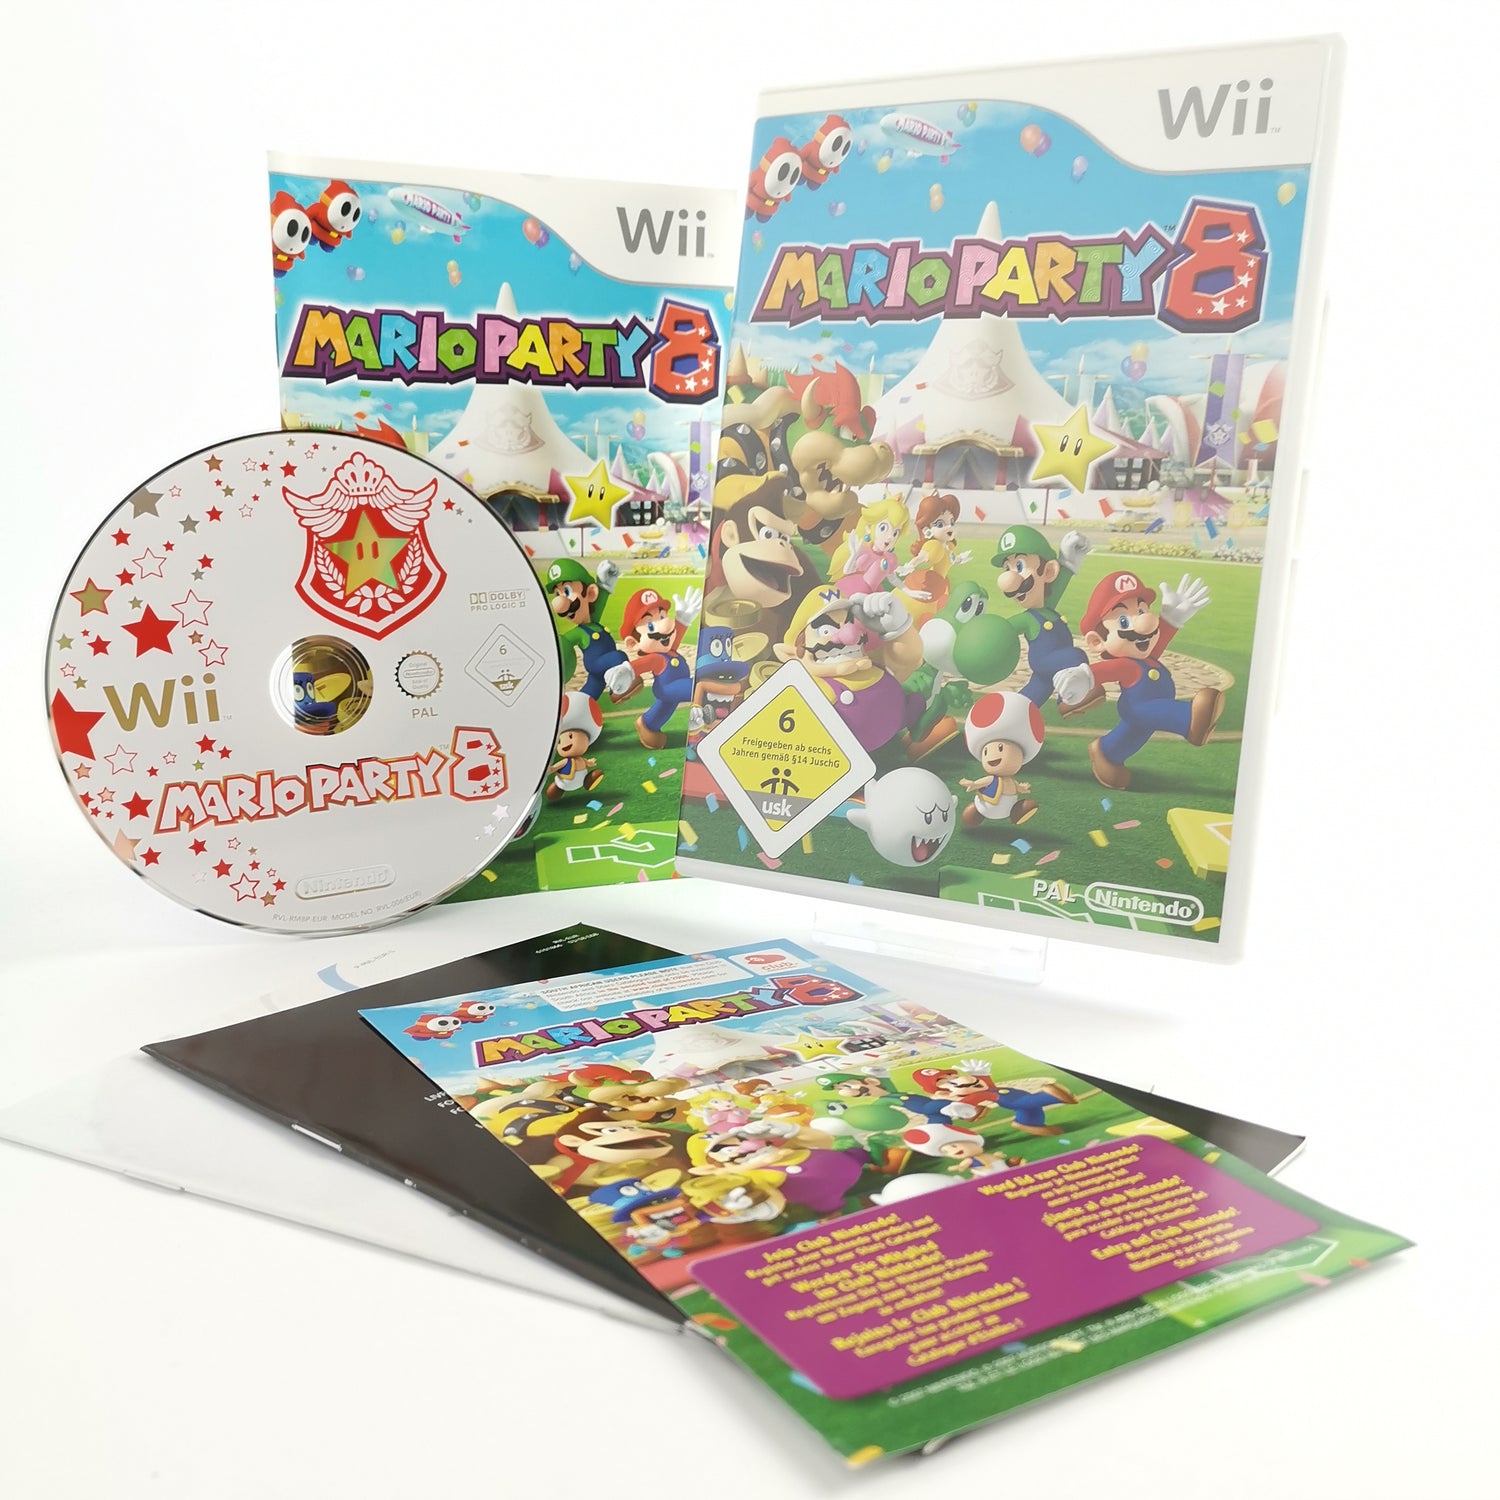 Nintendo Wii Game: Mario Party 8 | Wii & Wii U - German PAL version orig